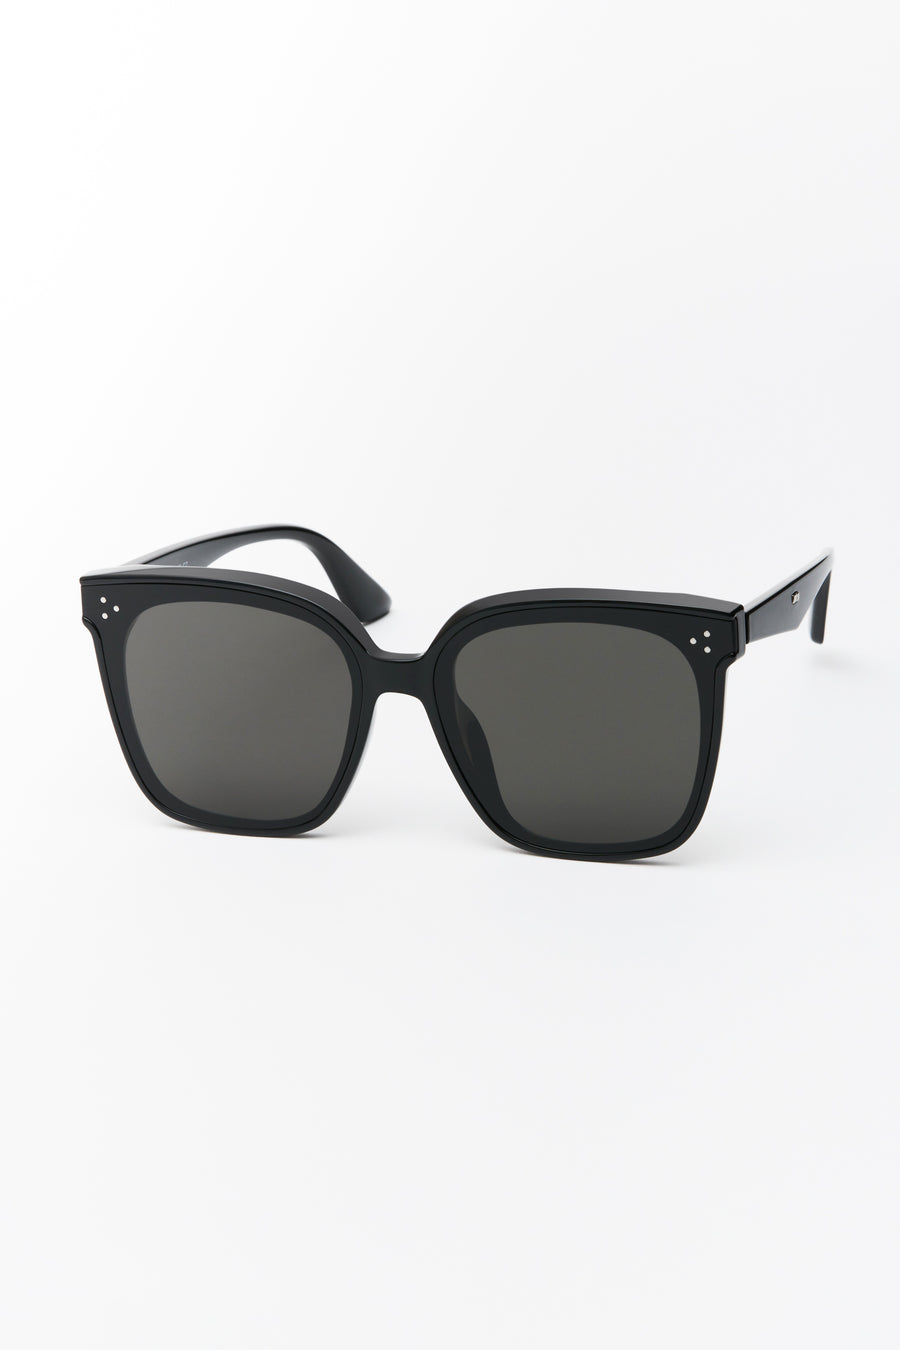 Dom Sunglasses Black/Smoke Lens